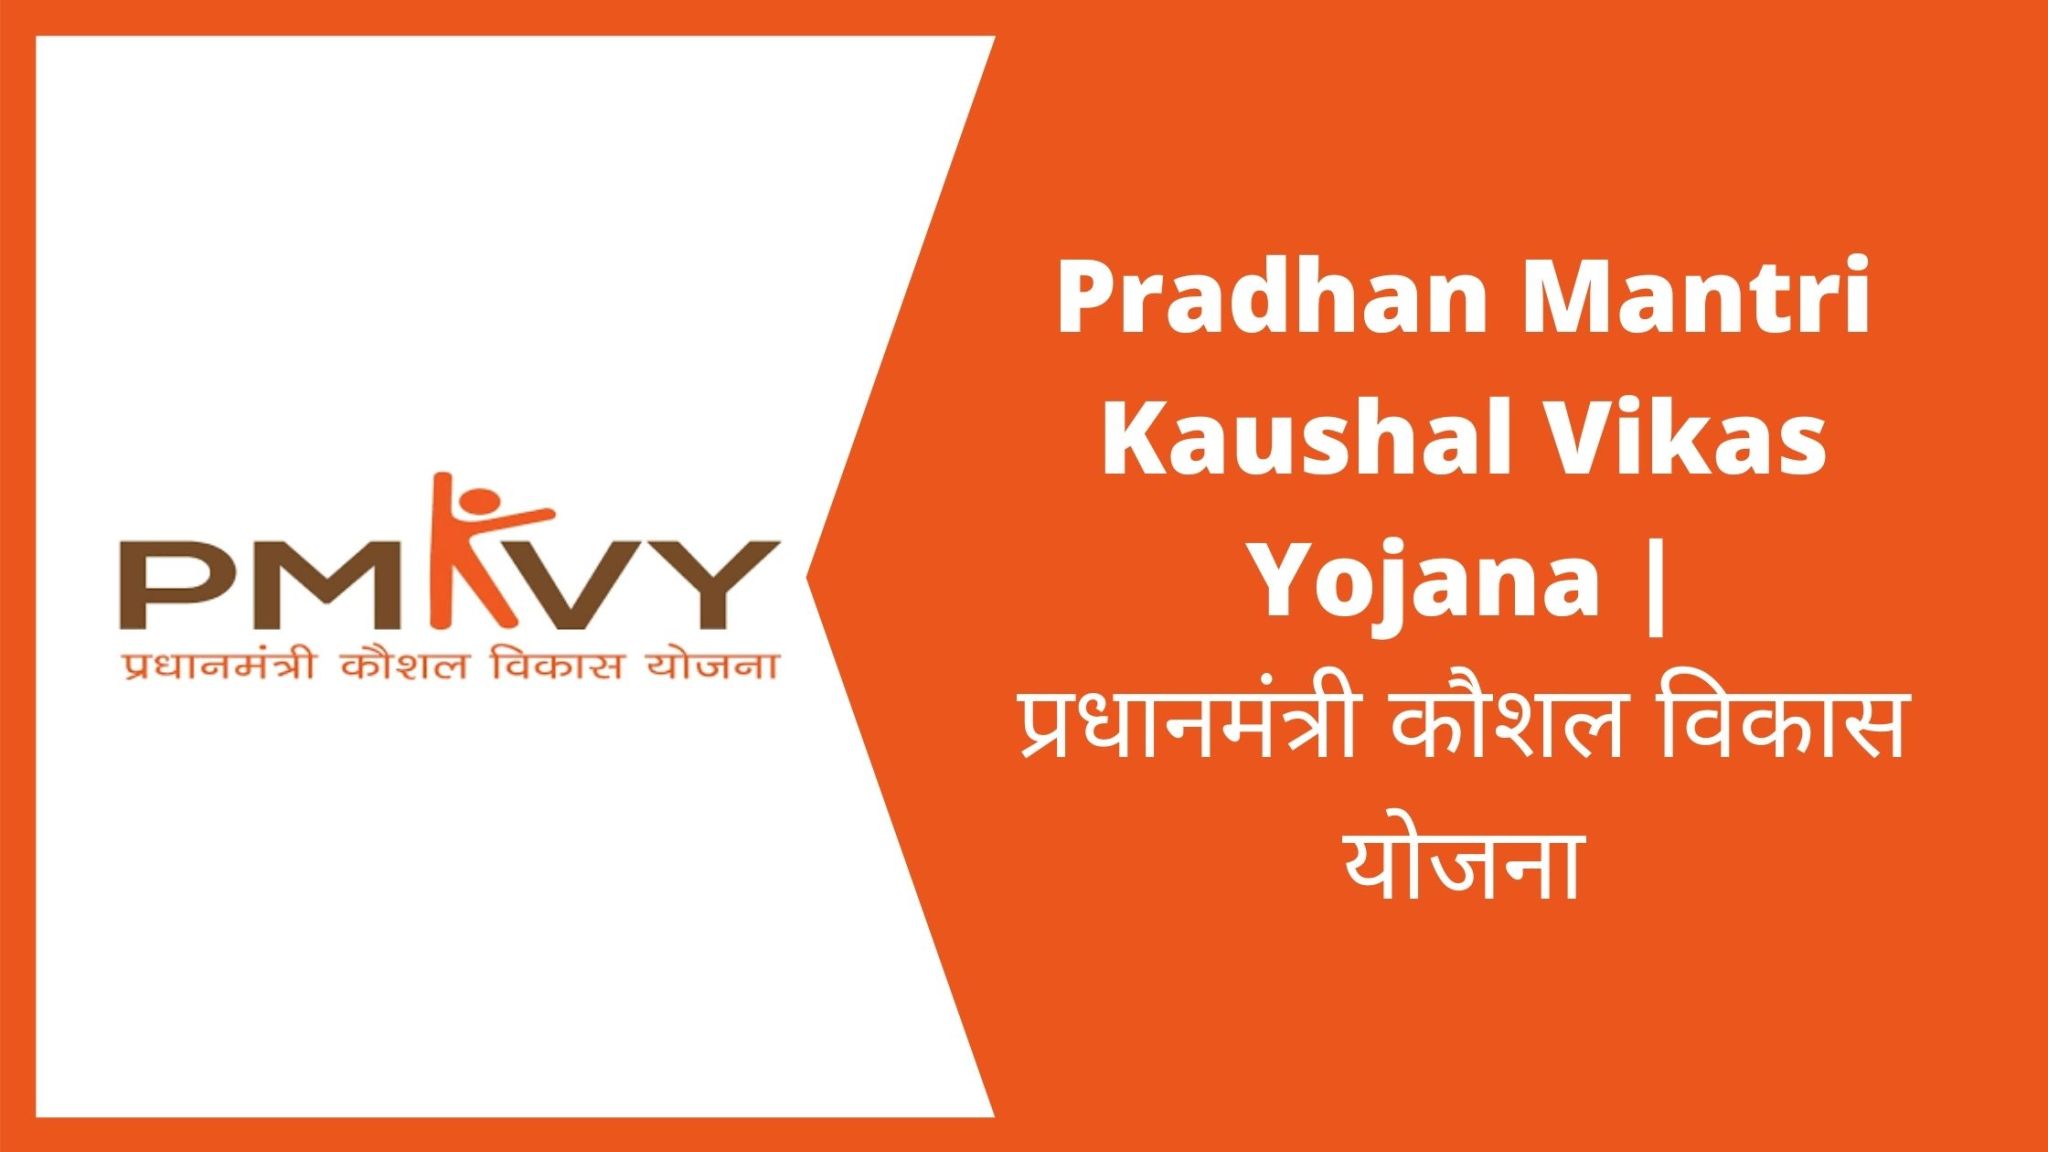 Pradhan Mantri Kaushal Vikas Yojana